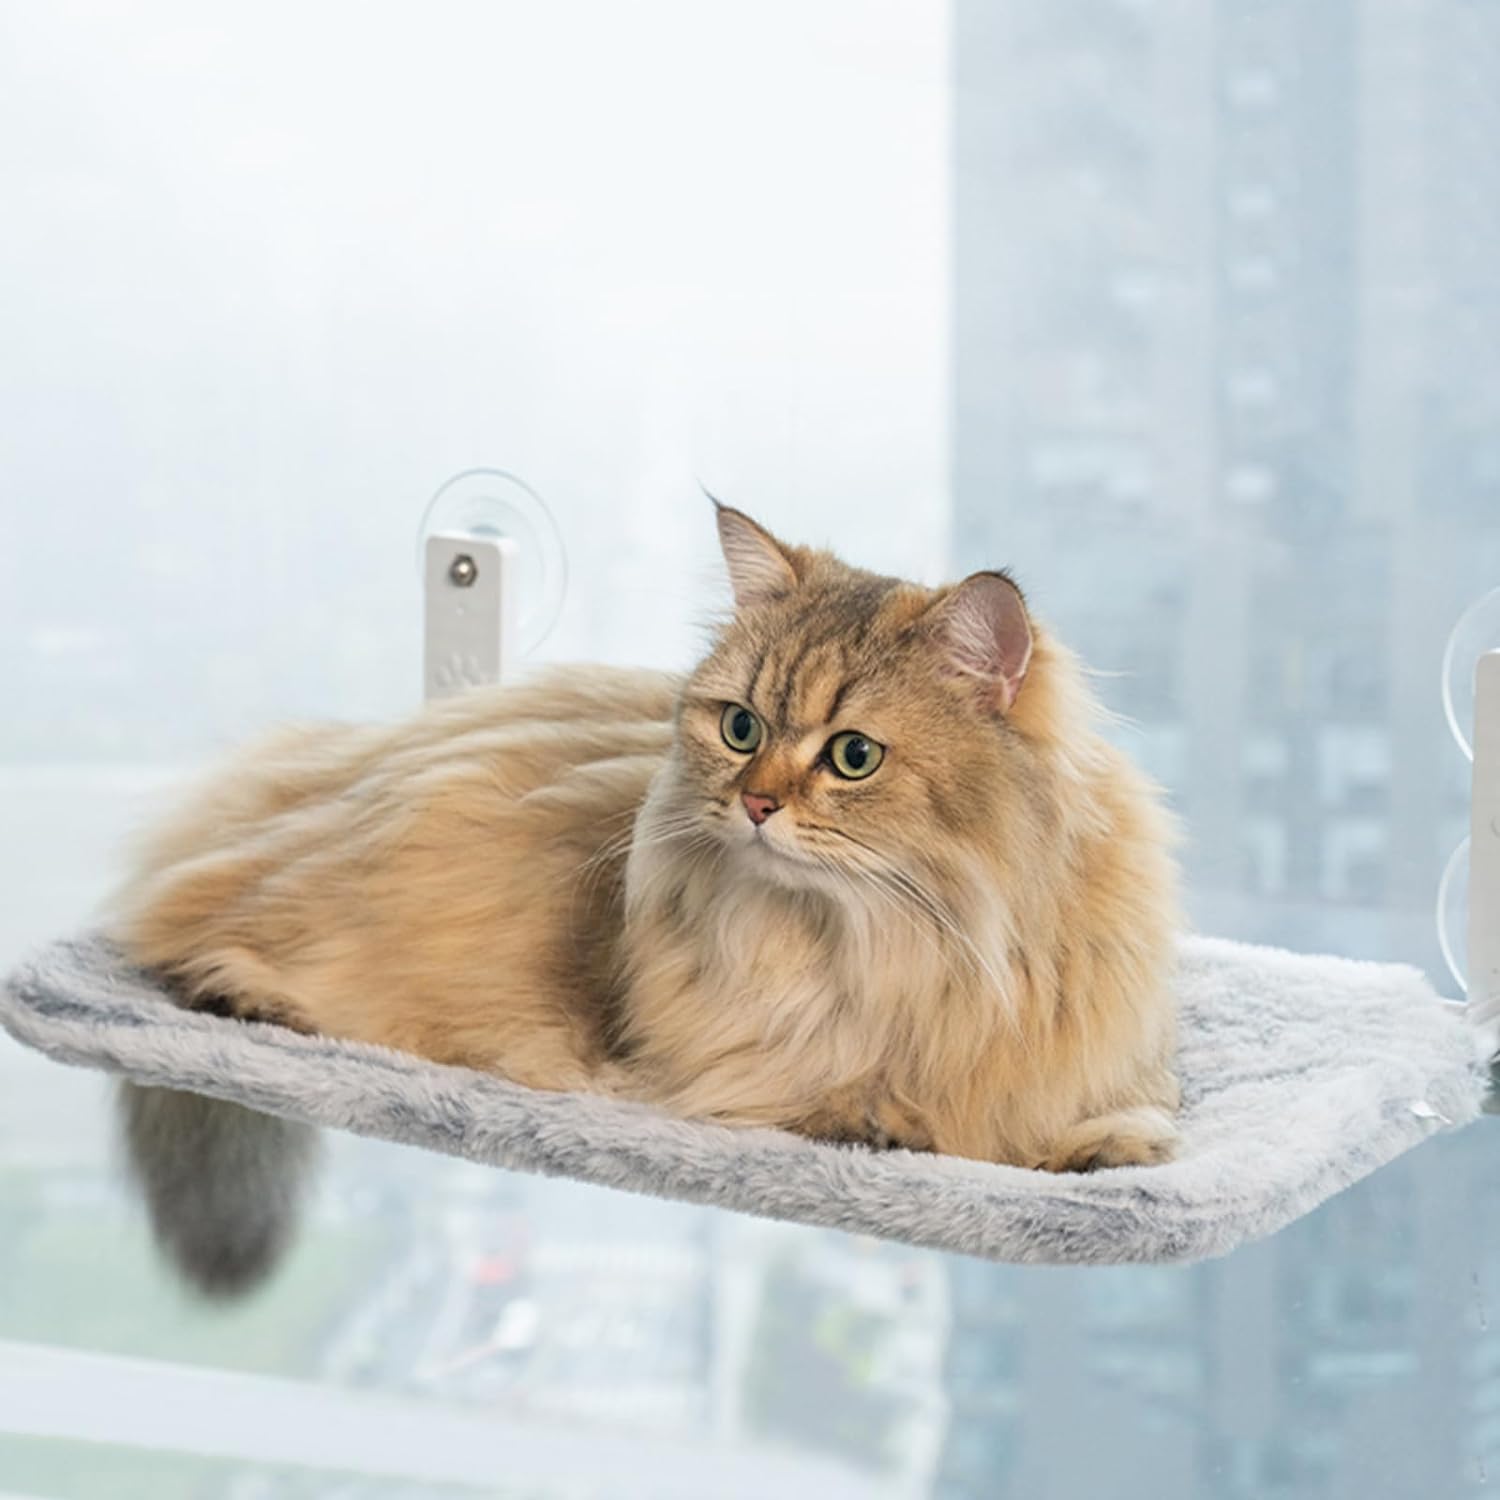 KatzeHängematte™ - Die ultimative Katzenhängematte für Ihre Katze zu Hause | 50% RABATT